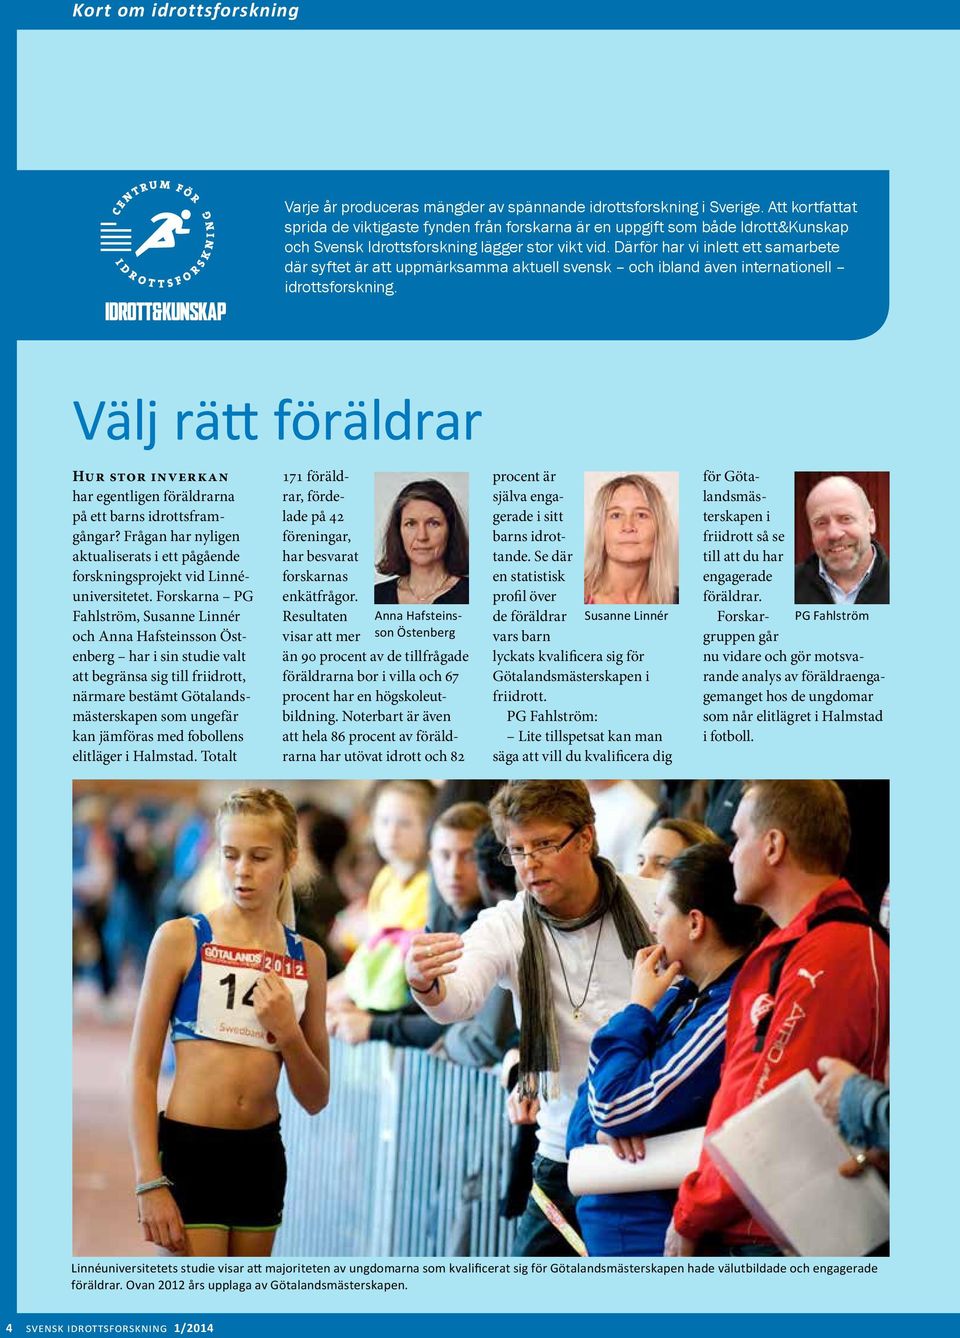 Därför har vi inlett ett samarbete där syftet är att uppmärksamma aktuell svensk och ibland även internationell idrottsforskning.